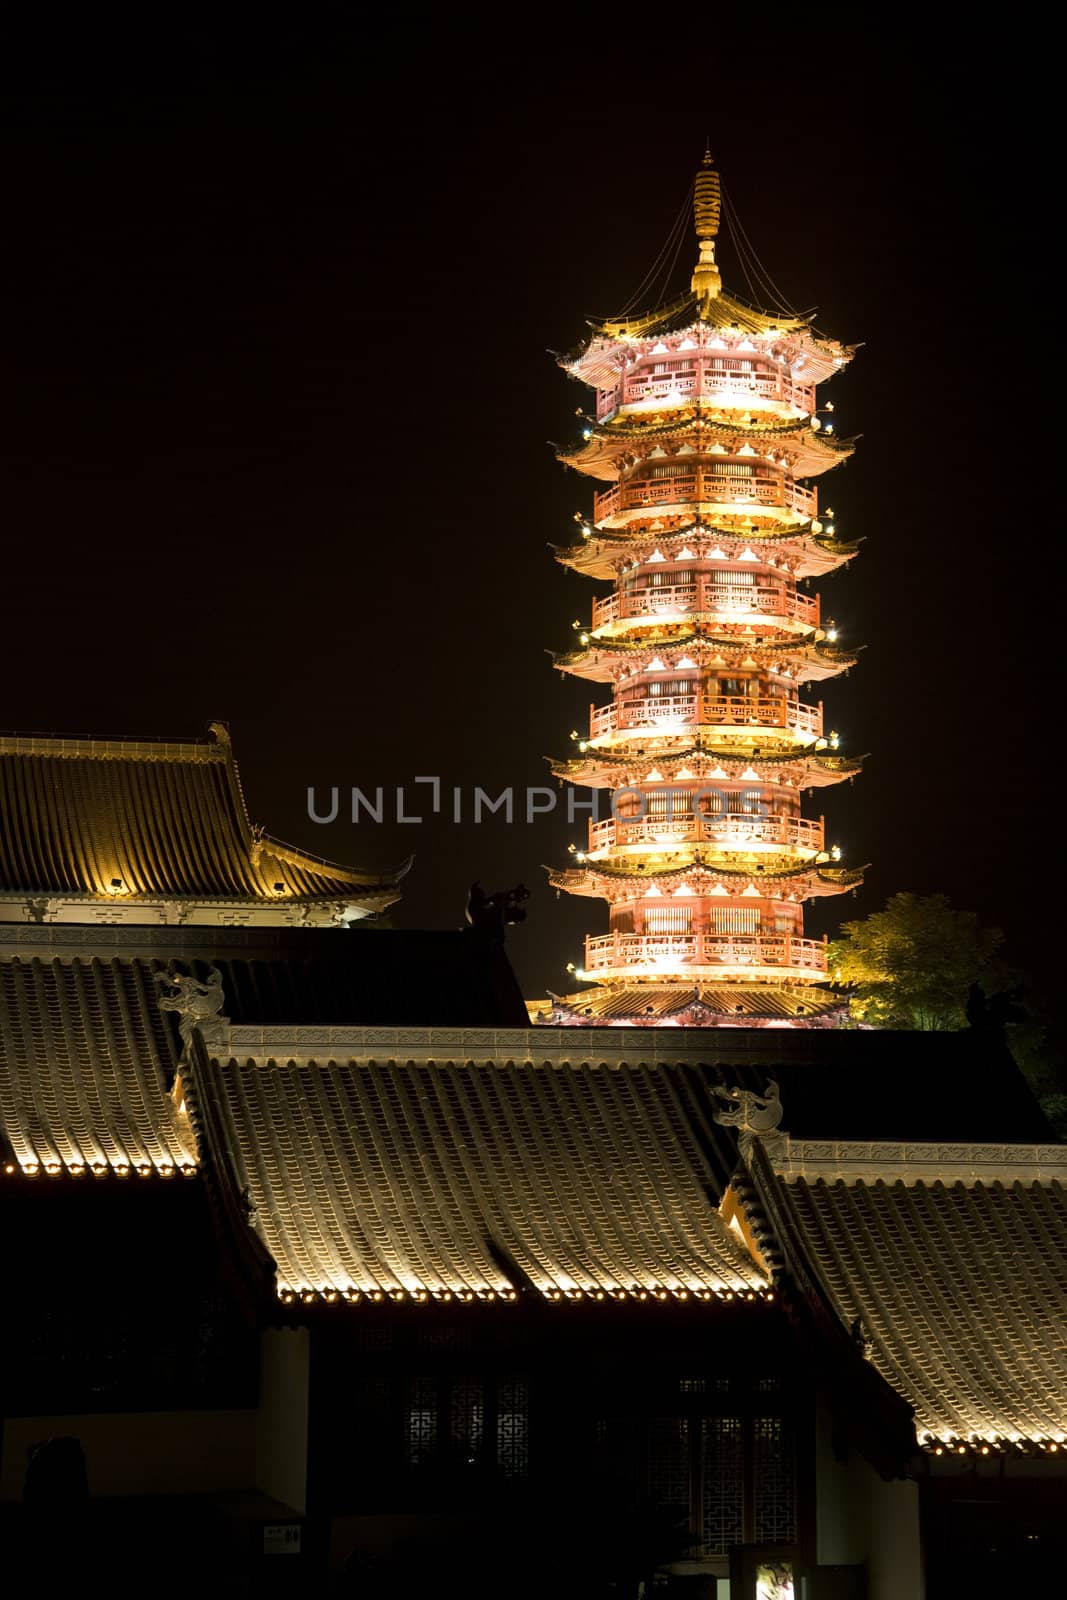 Mulong Lake Pagoda and Buildings, Guilin, China by shariffc